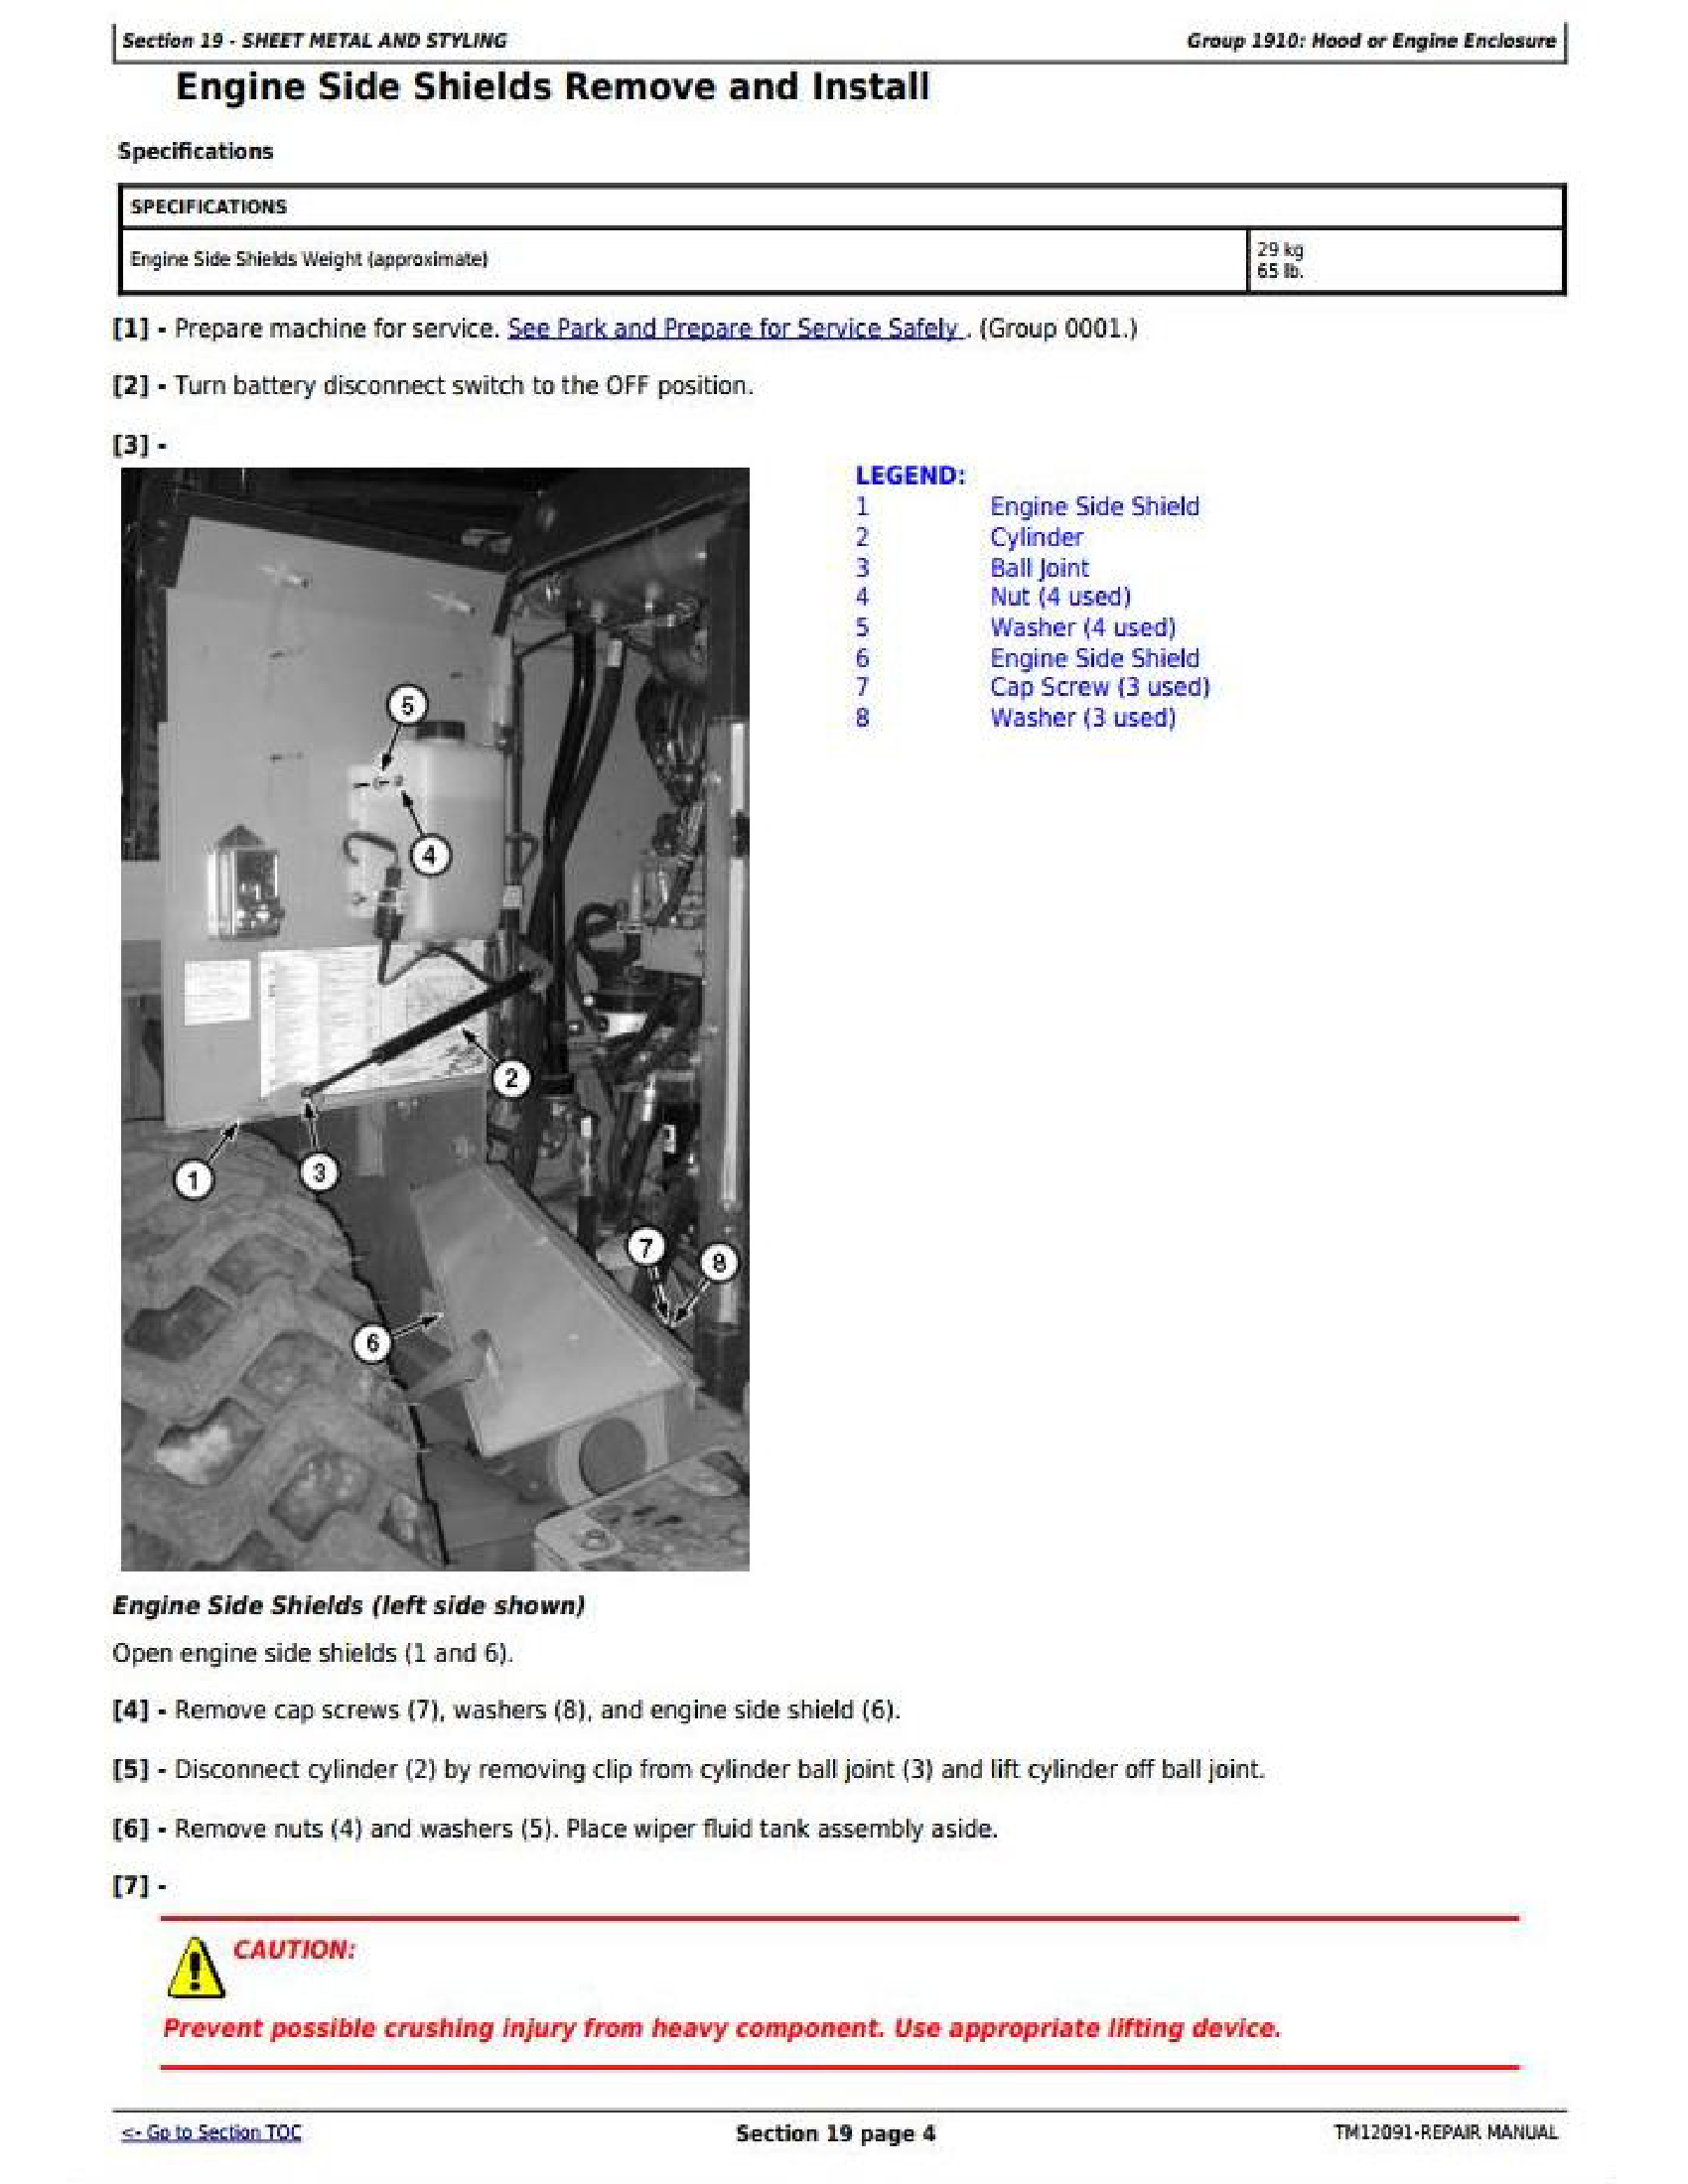 John Deere 840 manual pdf